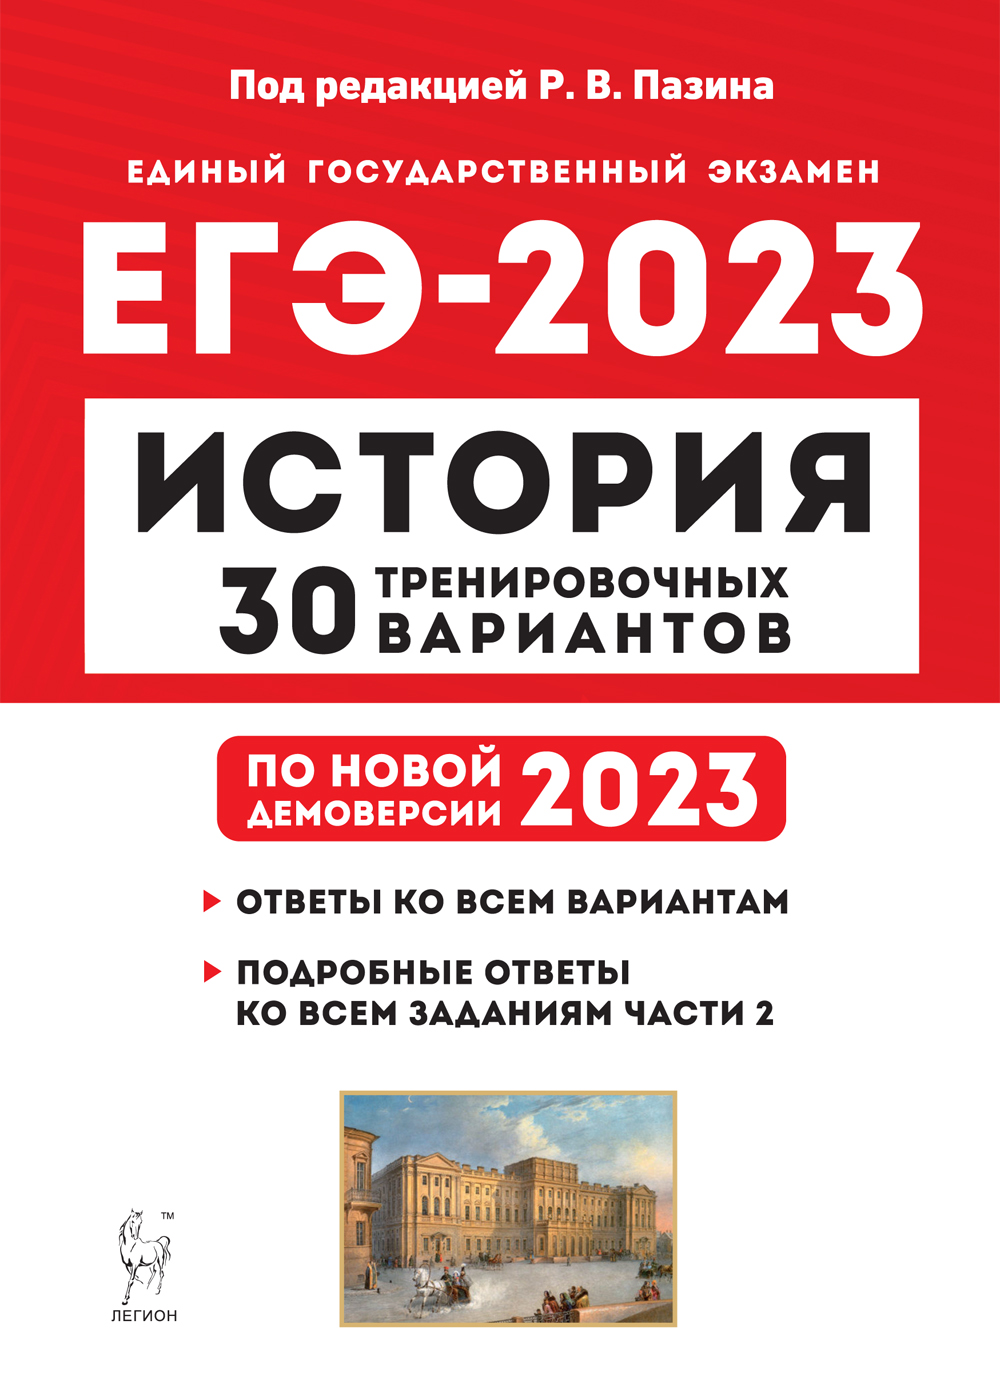 ЕГЭ-2023. История: Подготовка к ЕГЭ-2023: 30 тренировочных вариантов по демоверсии 2023 года